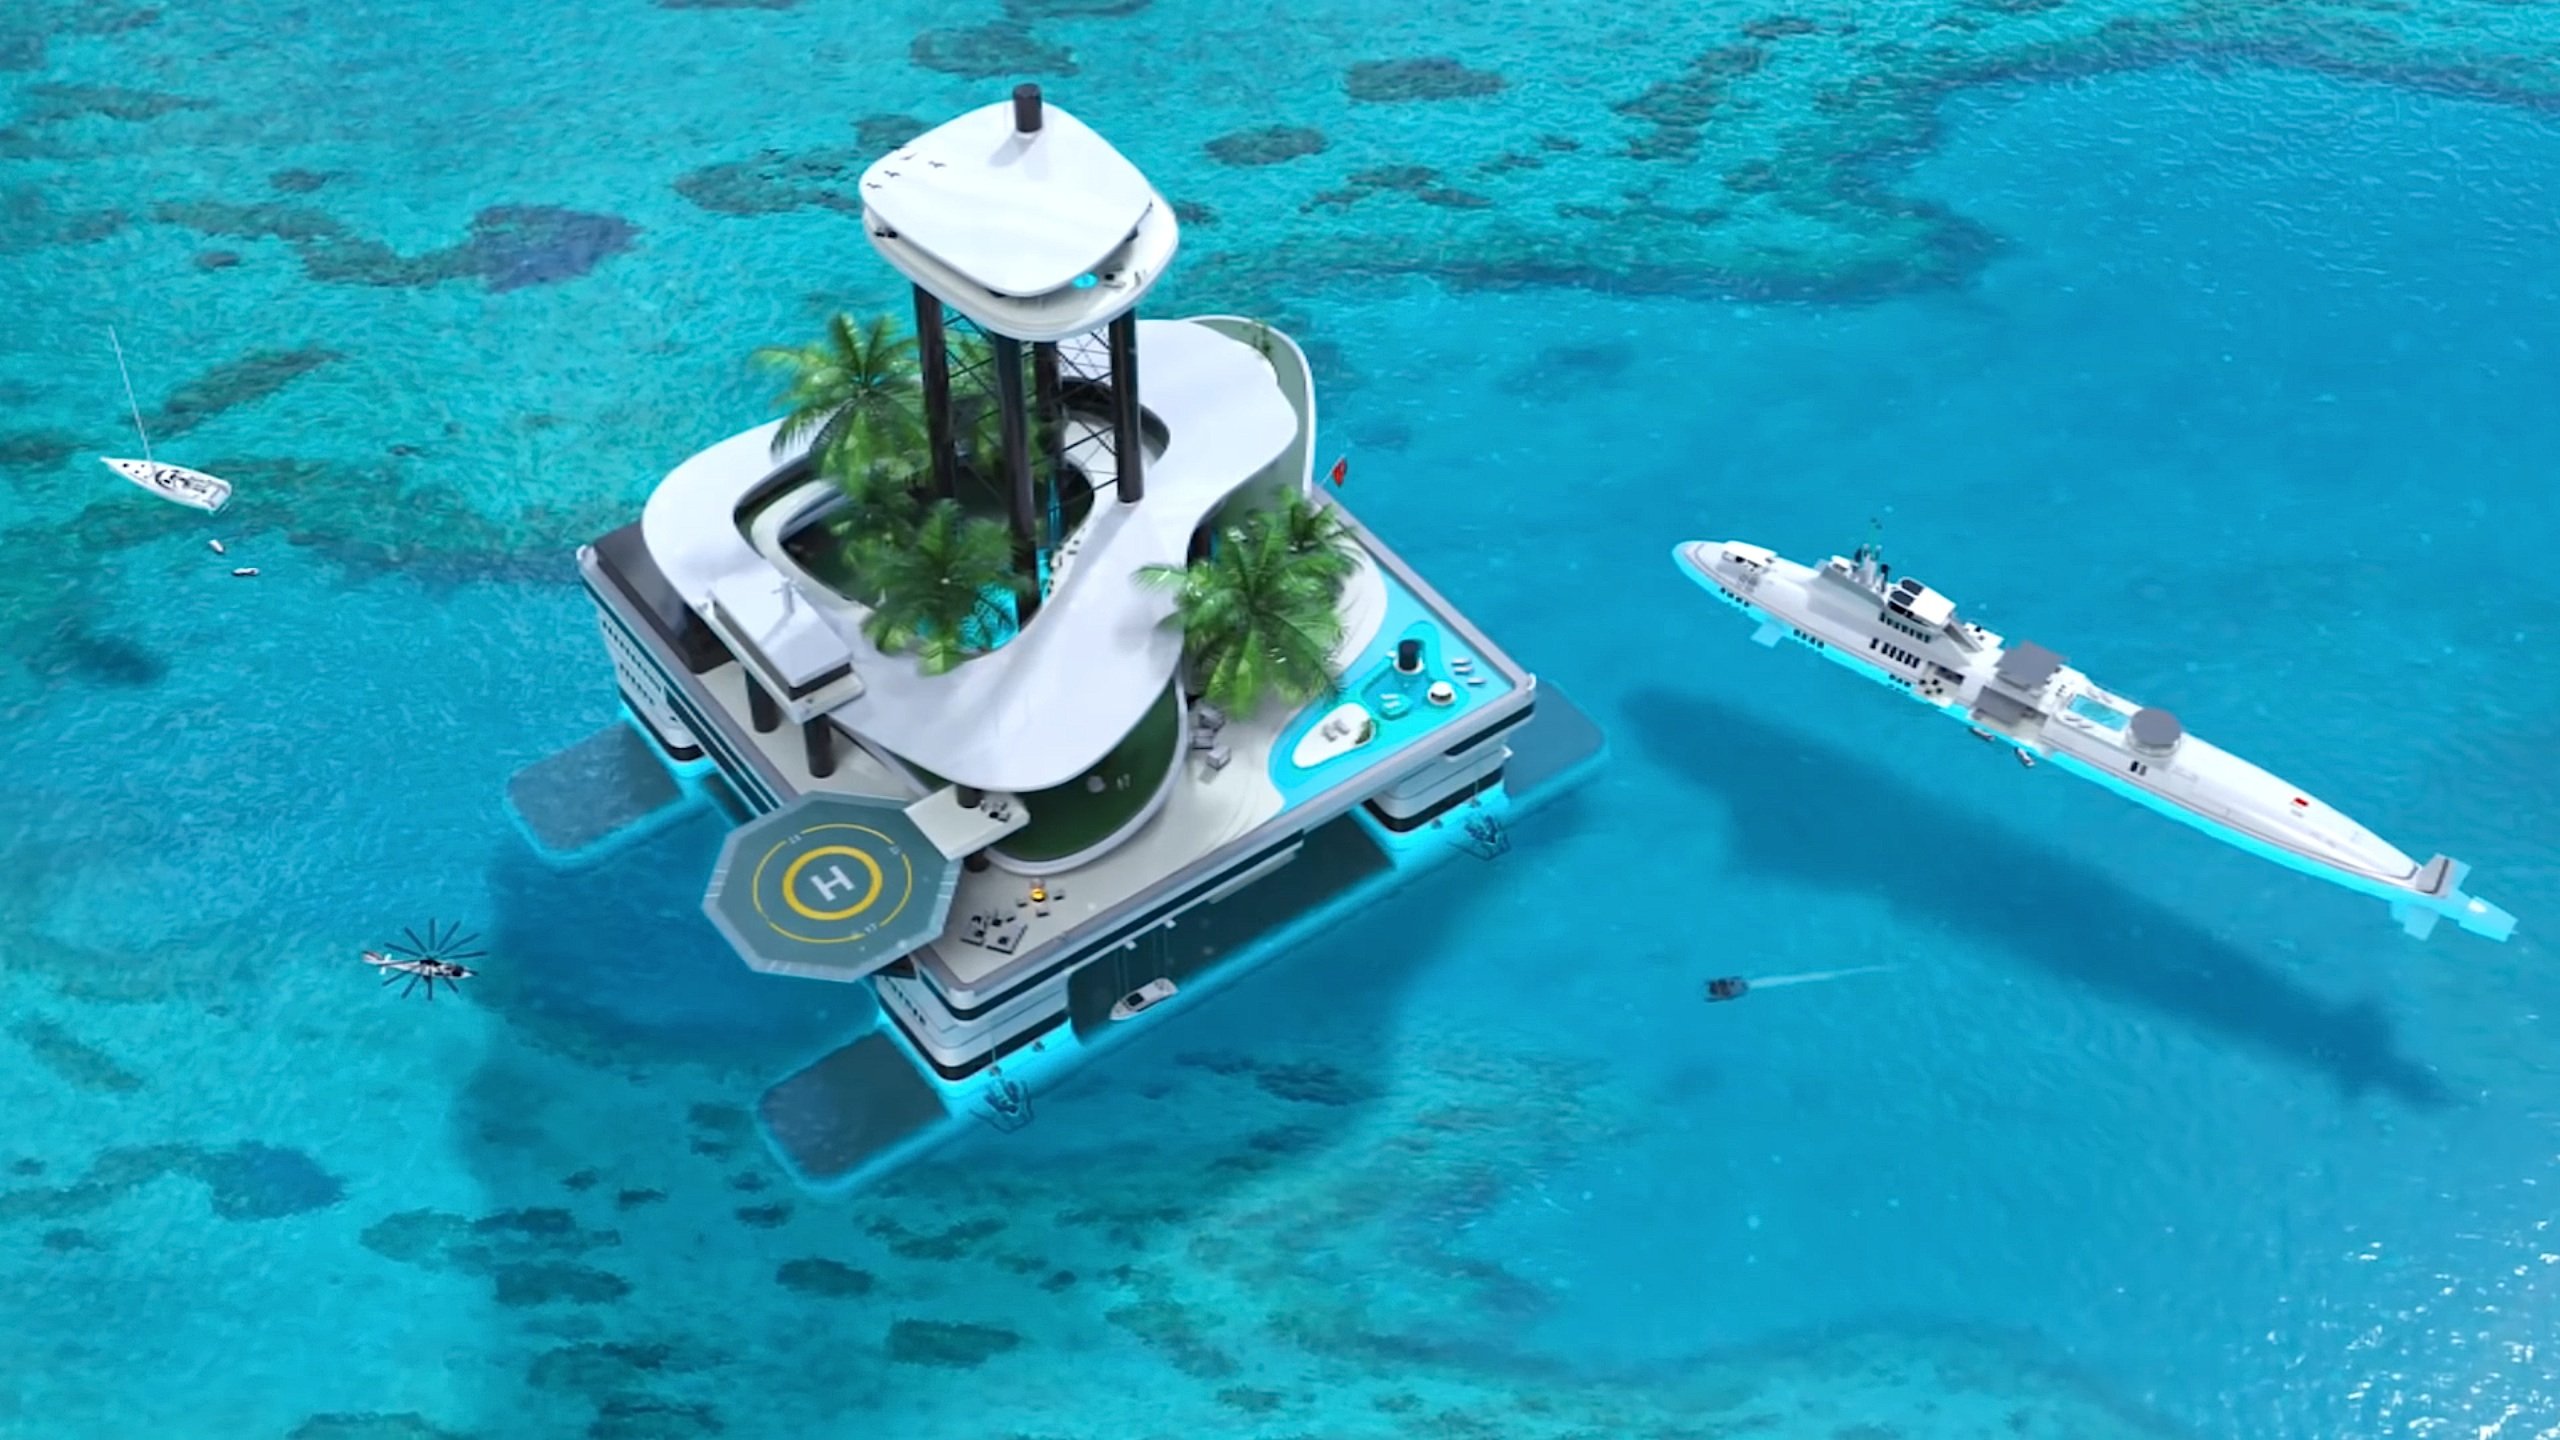 „Kokomo Ailand“ ist etwa für ganz reiche Menschen auf dieser Welt. Die Insel verfügt über ein Penthouse in 80 m Höhe, einen Palmengarten, Pools, Wellness-Bereiche und sogar ein Esszimmer unter Wasser mit Blick auf Haie und Wale – sofern sie in der Nähe sind. Rechts im Bild ein privates U-Boot mit Pool, ebenfalls vom österreichischen Hersteller Migaloo.